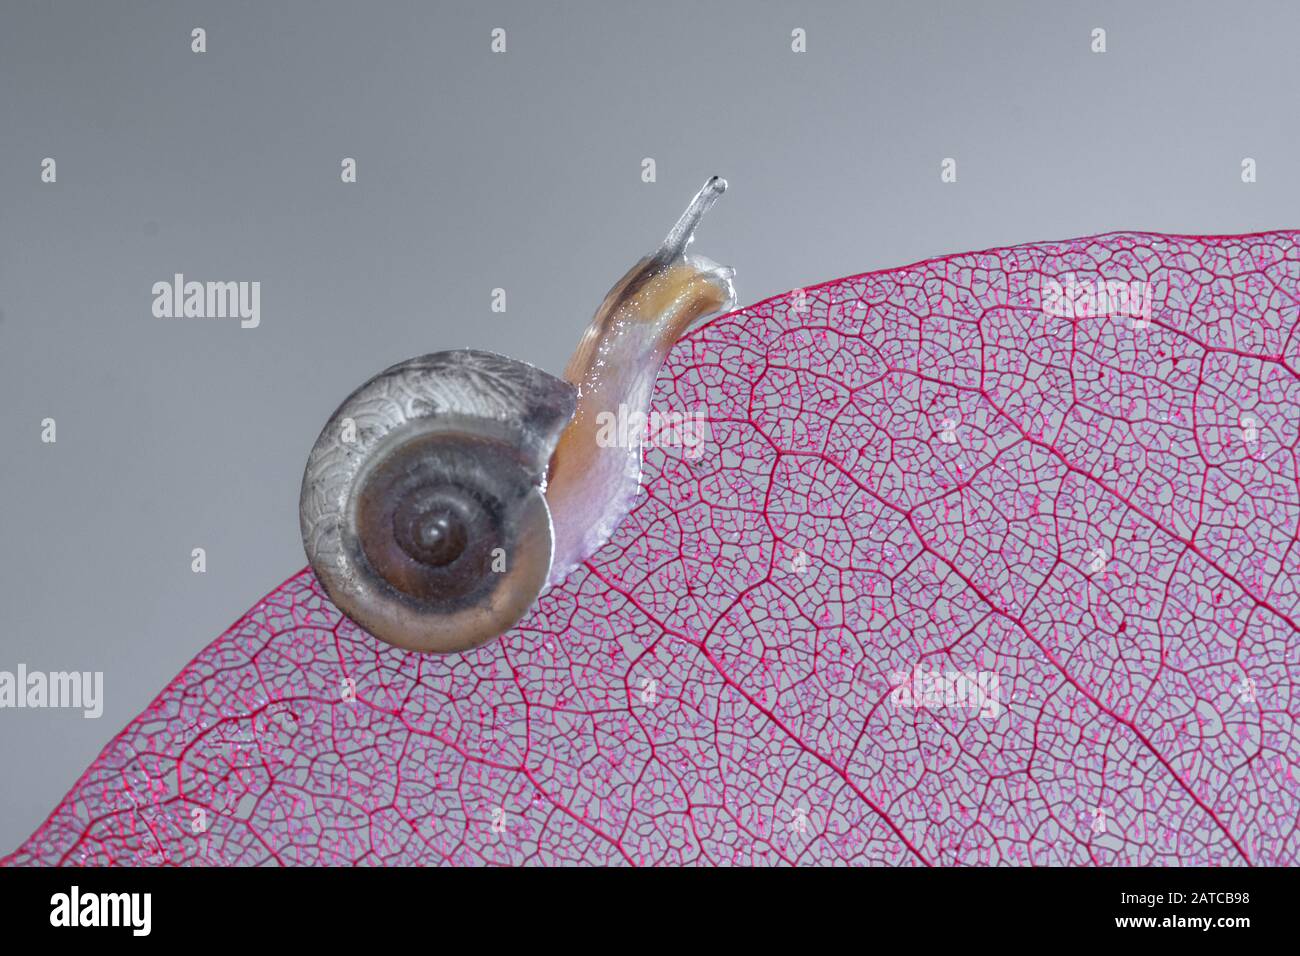 Gros plan d'un escargot miniature sur une feuille, Indonésie Banque D'Images